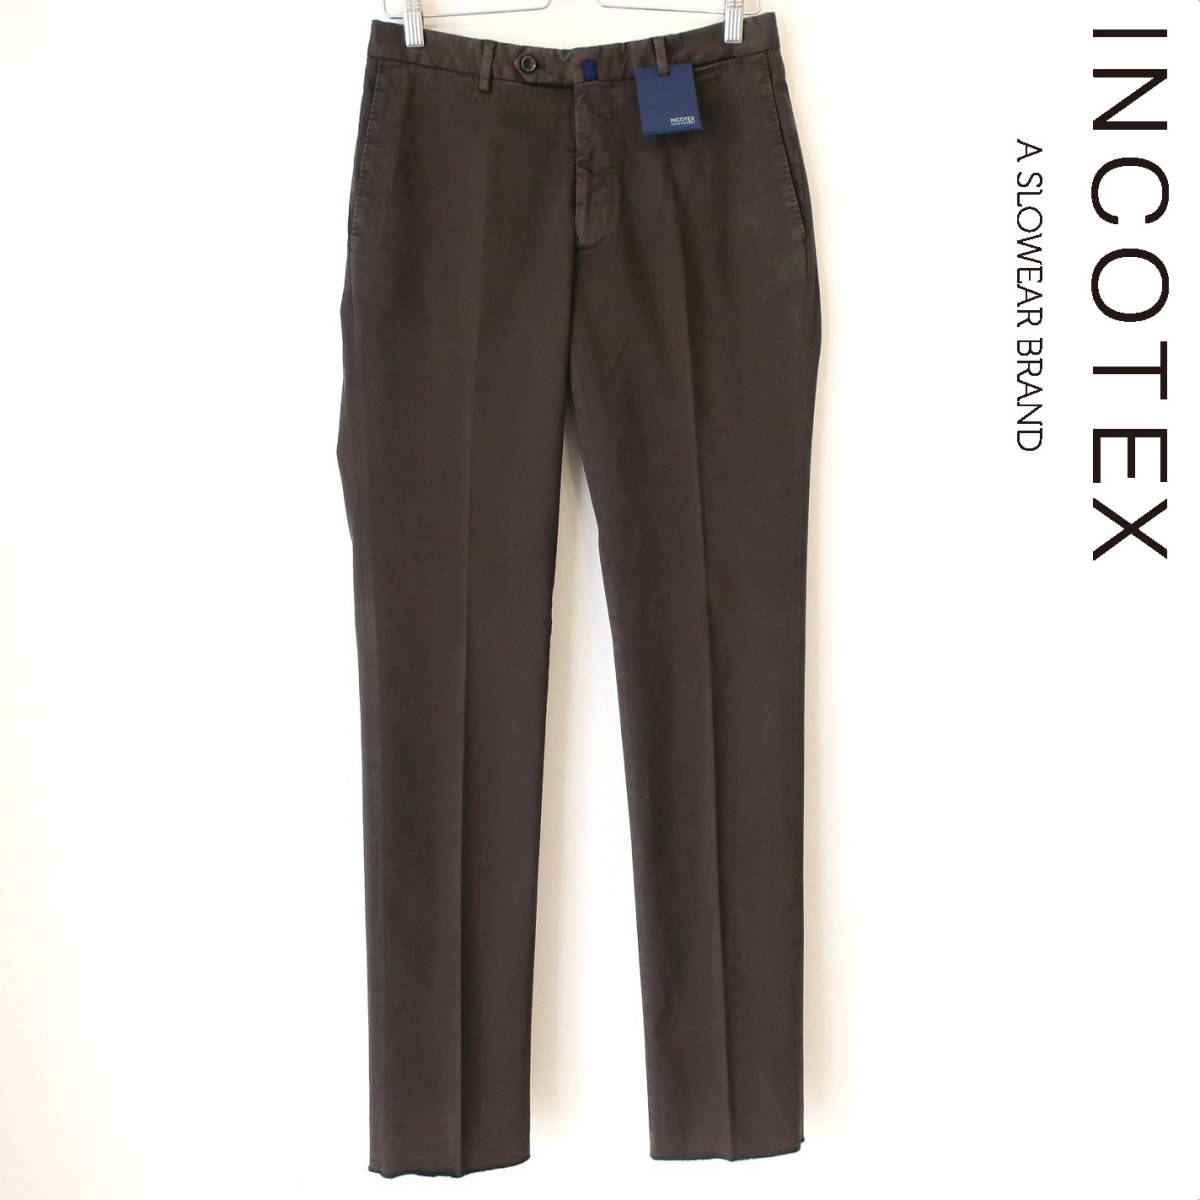 新品 未使用 INCOTEX インコテックス 定番 A35 ストレッチ スリム チノパン スラックス パンツ 濃茶 ダークブラウン メンズ 46 Mサイズ